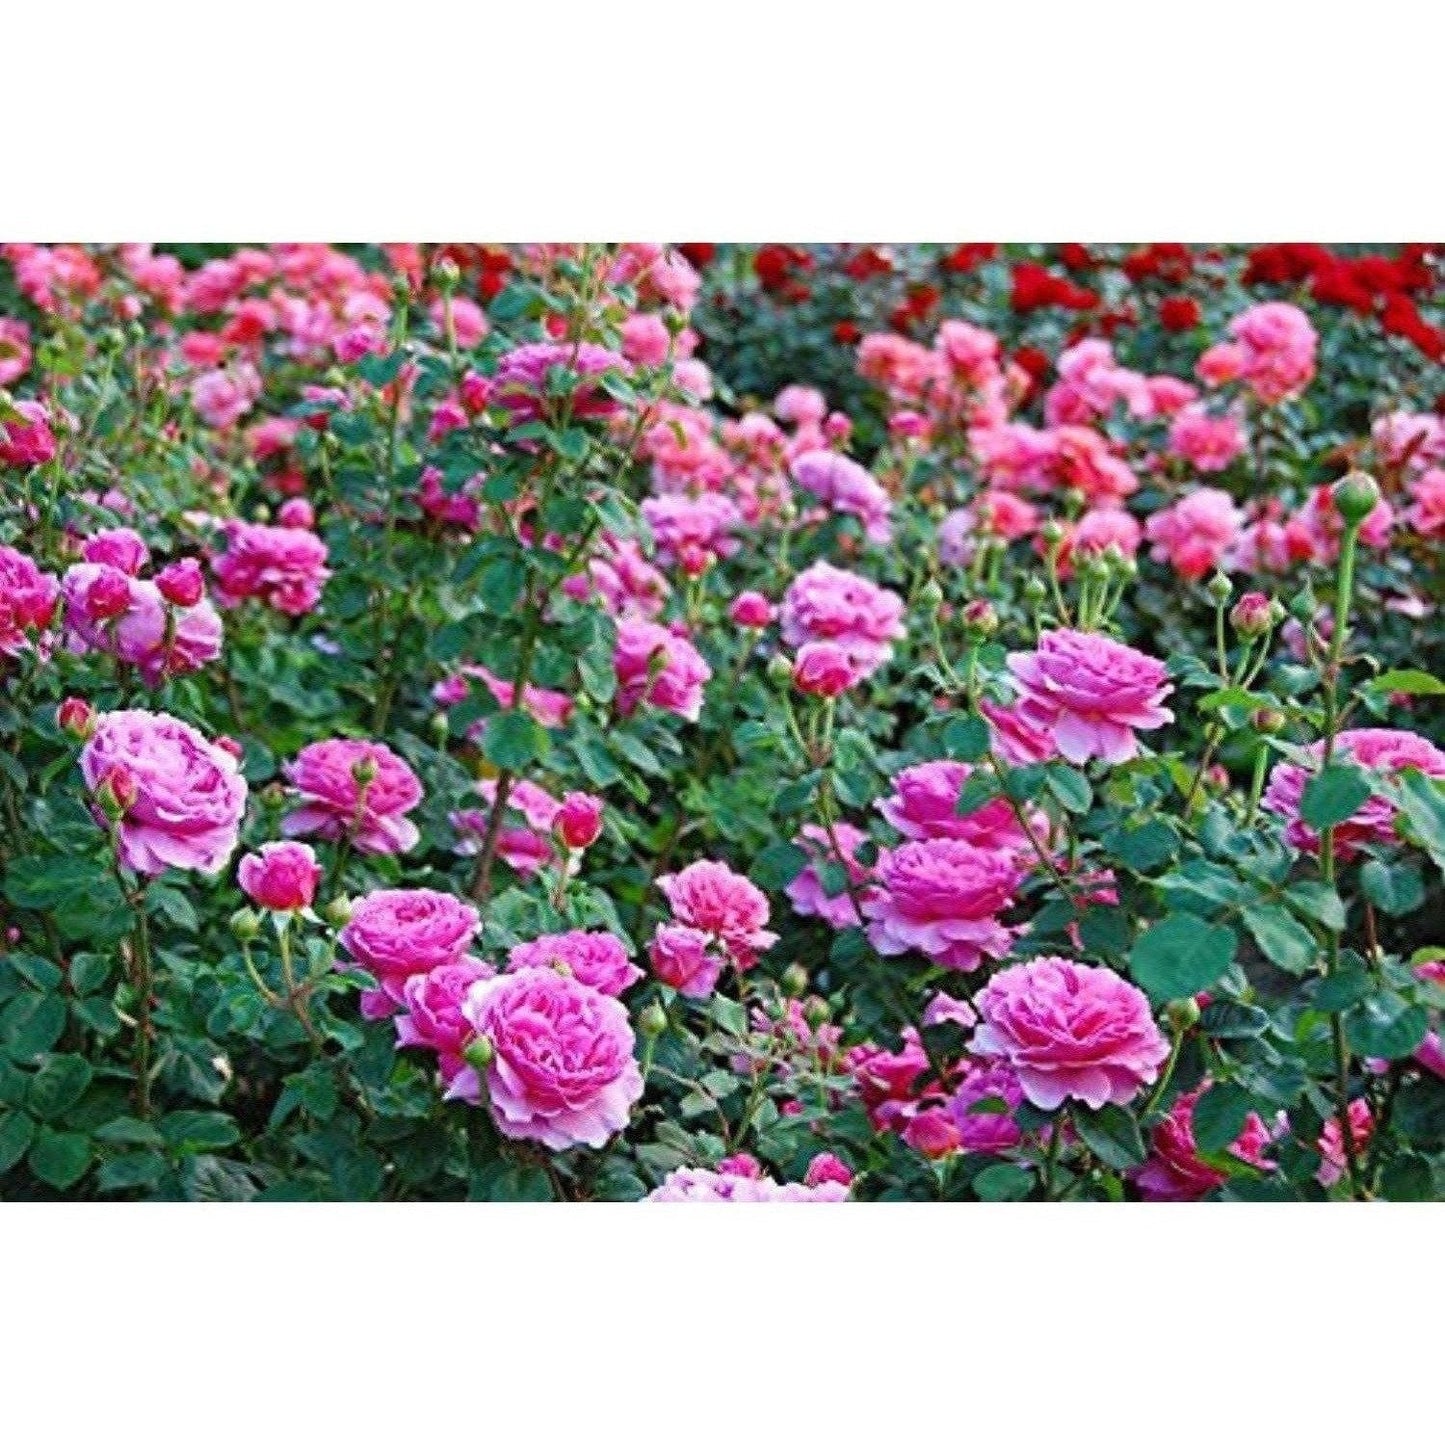 Mesmara Herbal Rose petal powder 75g